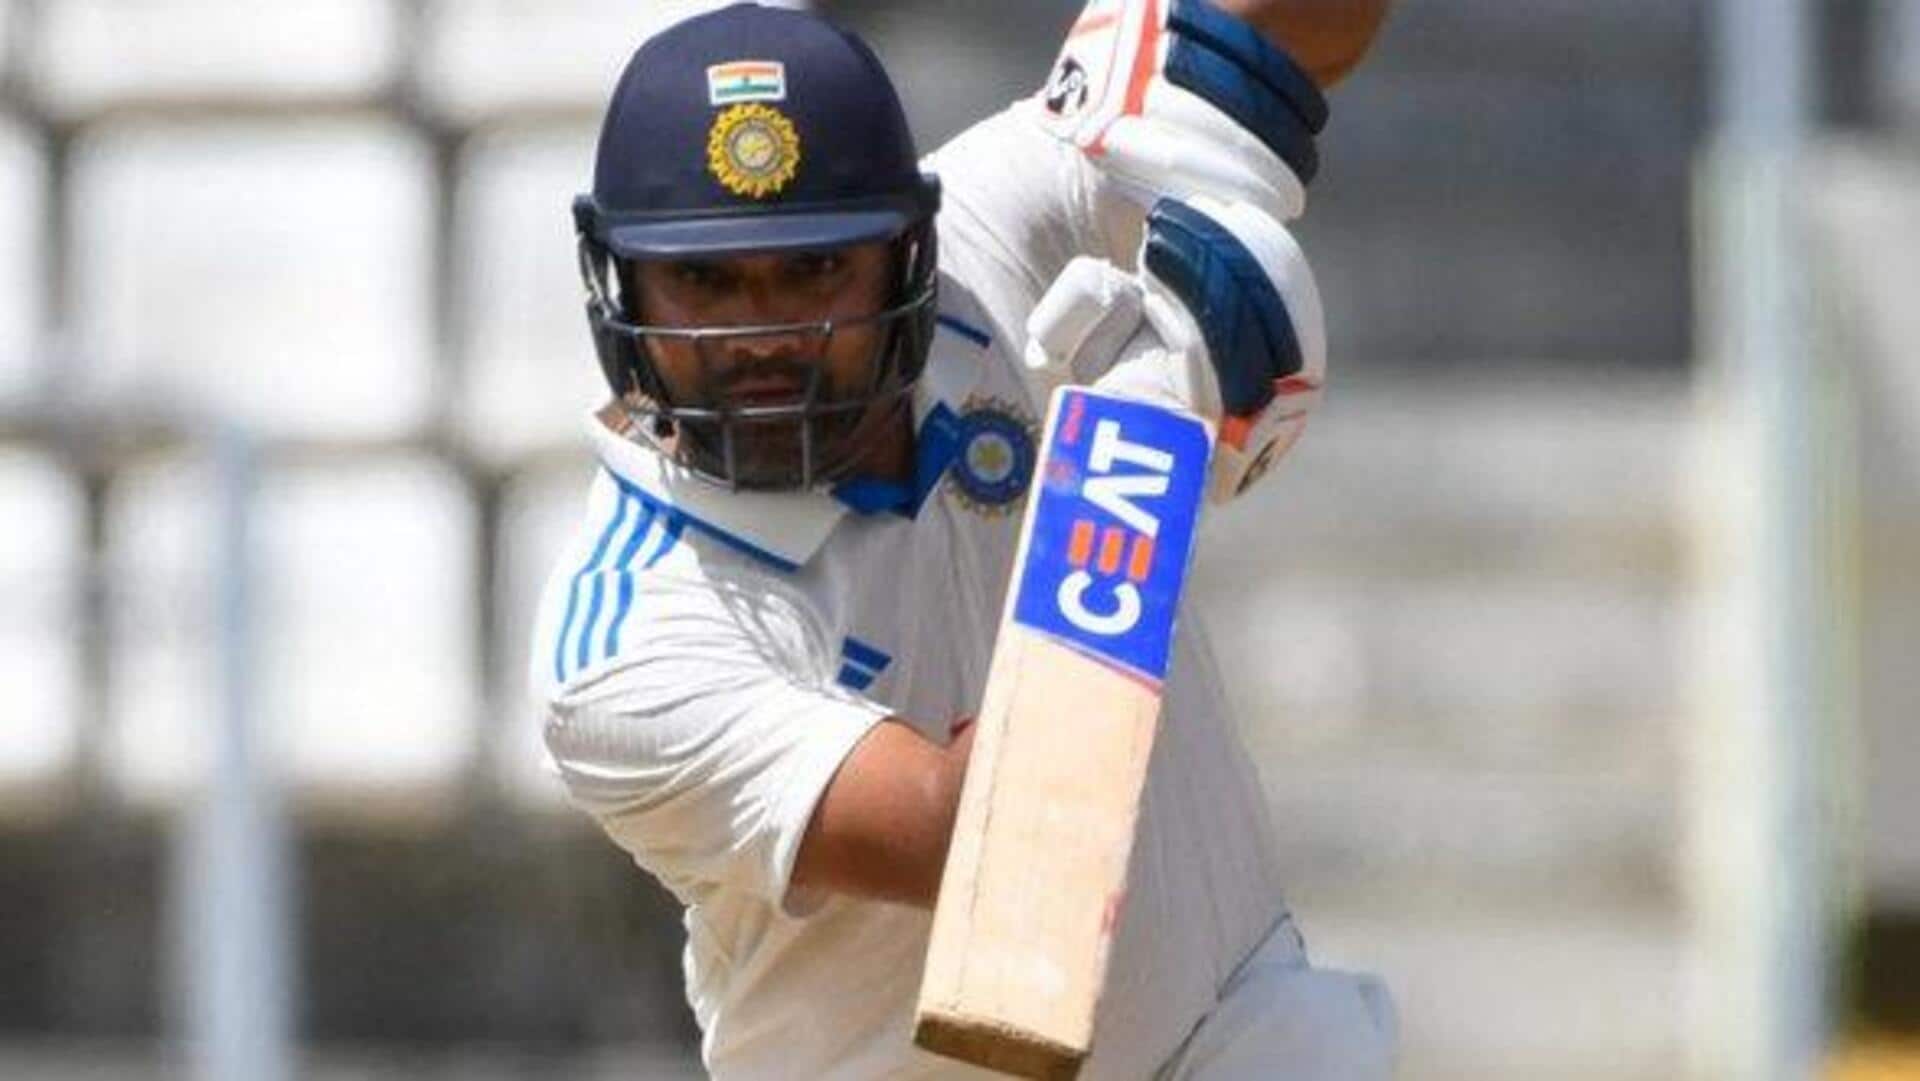 रोहित शर्मा विश्व टेस्ट चैंपियनशिप में हैं सबसे ज्यादा शतक लगाने वाले भारतीय बल्लेबाज, जानिए आंकड़े